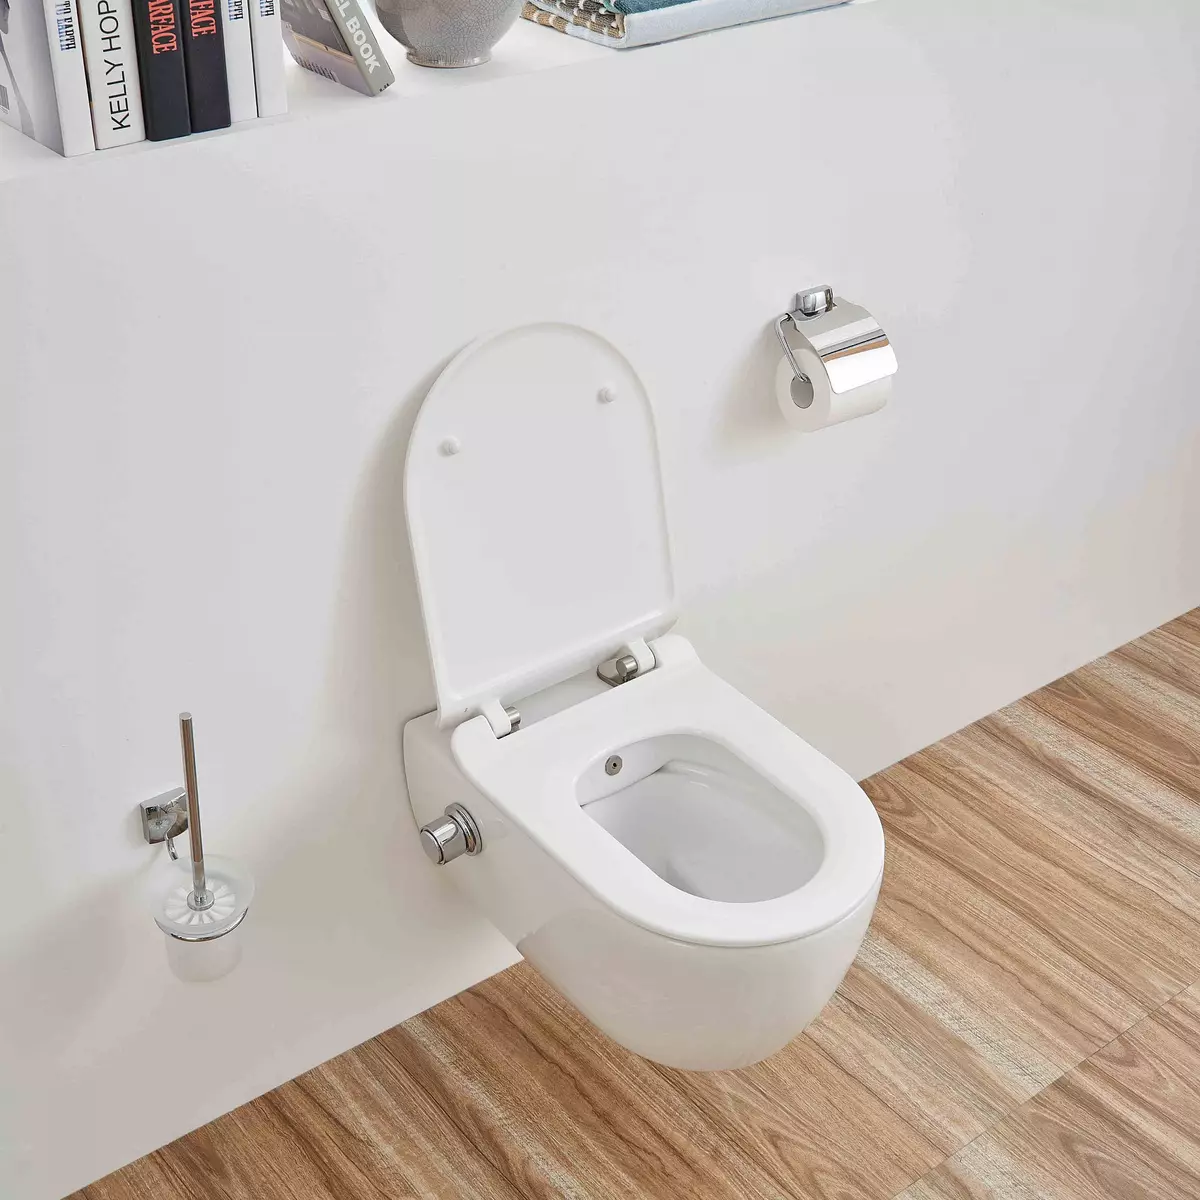 Τουαλέτα με μια λειτουργία Bidet: Κρεμαστό τουαλέτα δύο σε ένα με ενσωματωμένο μπιντέ τουαλέτας, τουαλέτα δαπέδου, σε συνδυασμό με μια Bift, σχόλια 10554_16